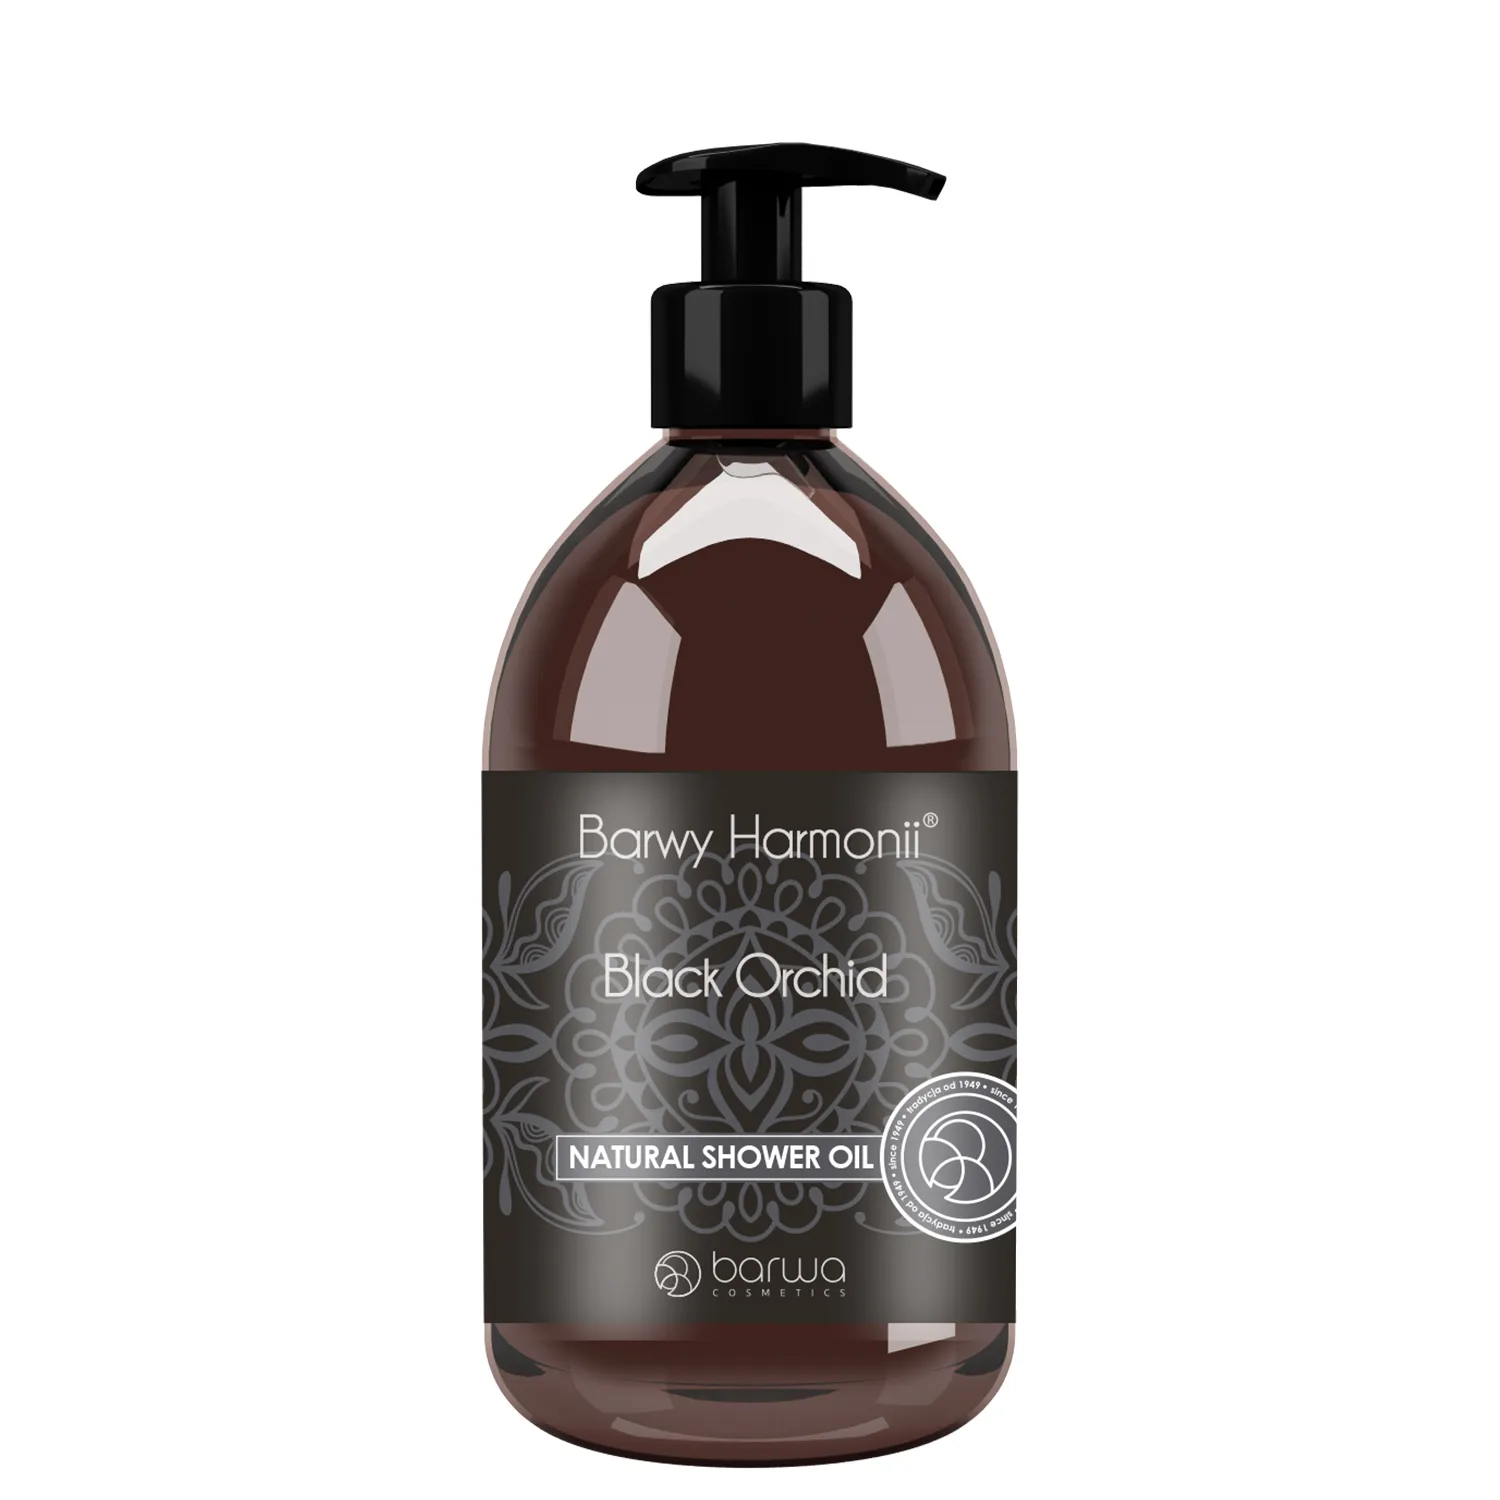 Barwa Barwy Harmonii olejek pod prysznic Black Orchid, 440 ml. Data ważności 31.05.2024